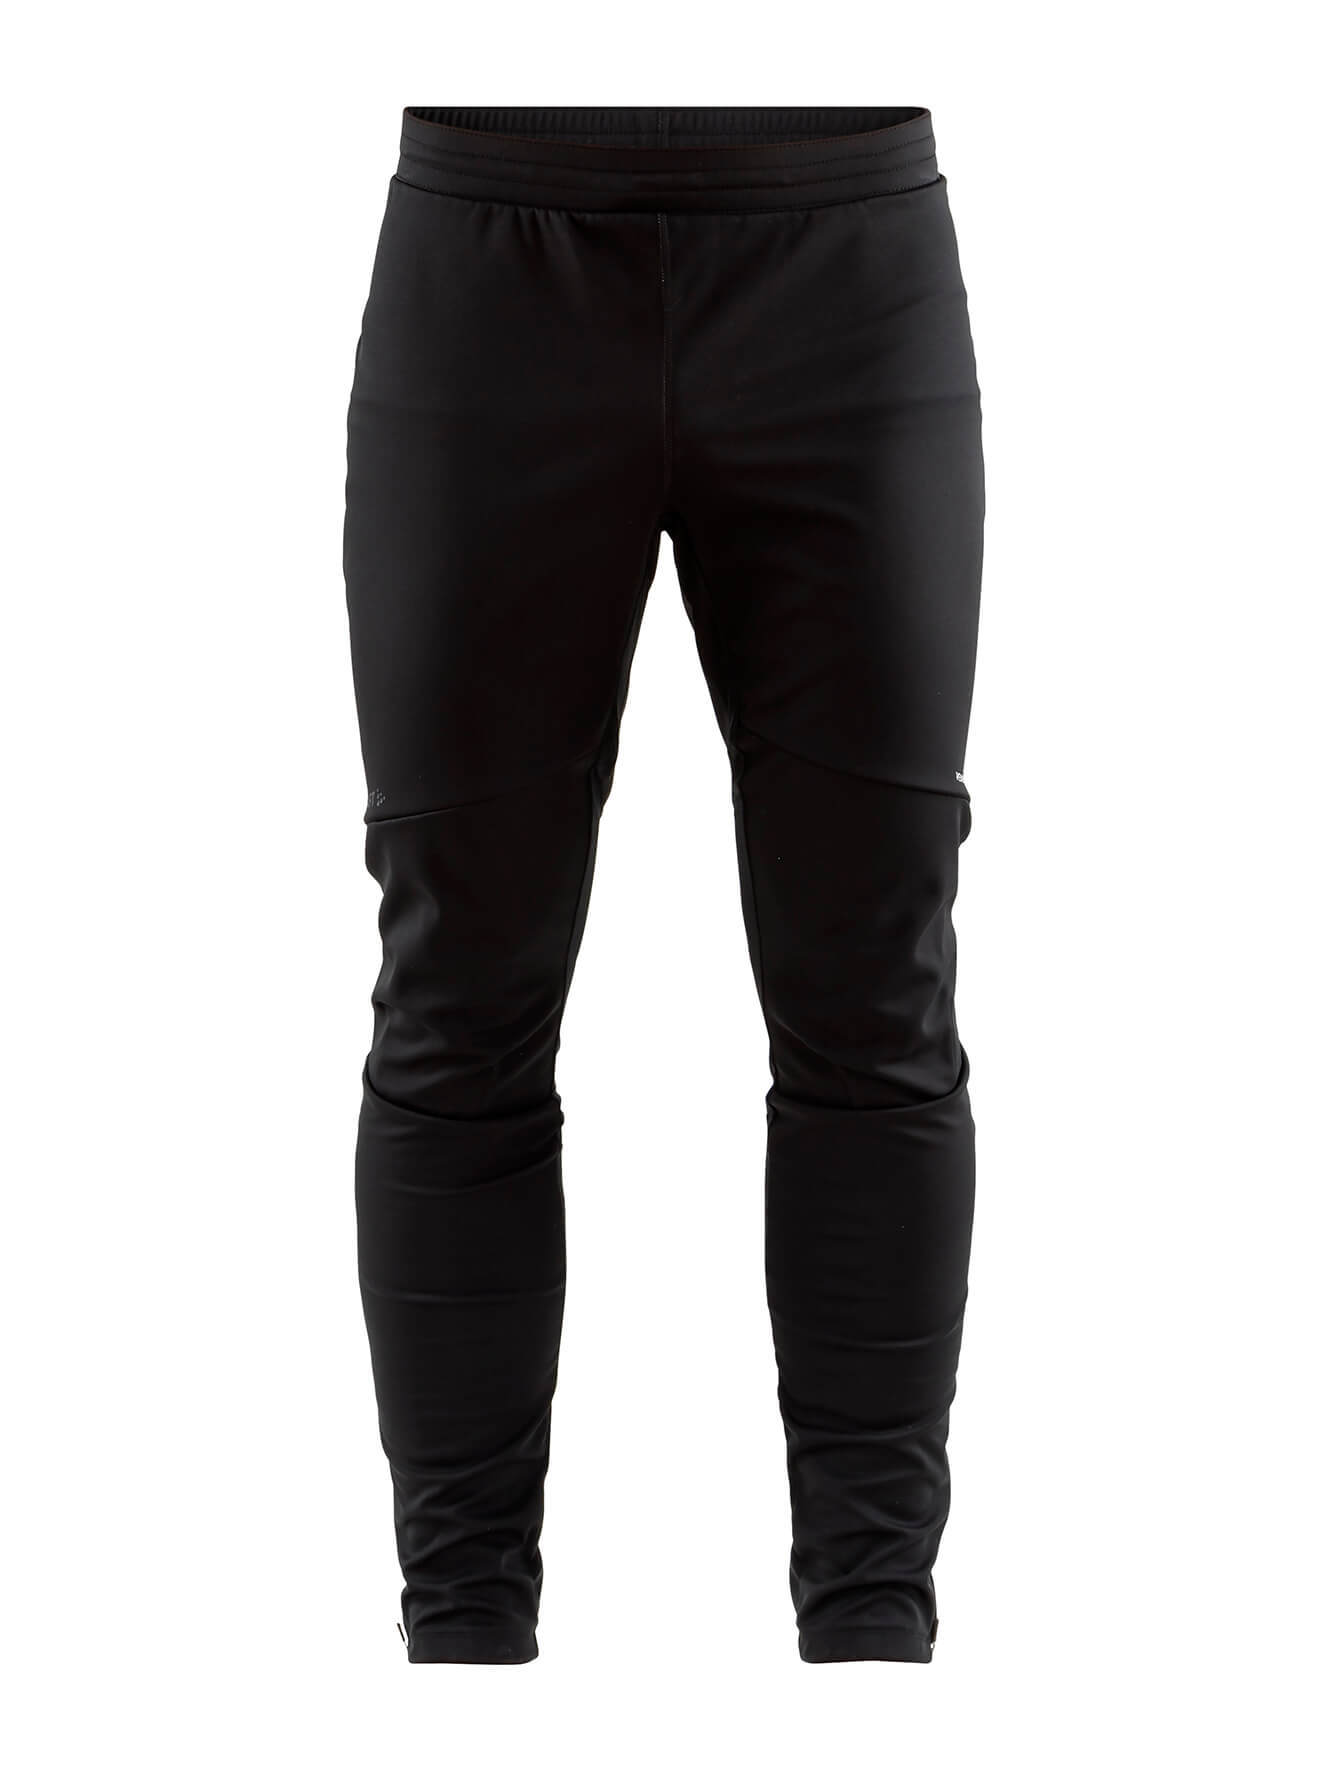 Craft Glide XC лыжные брюки мужские черные - 1